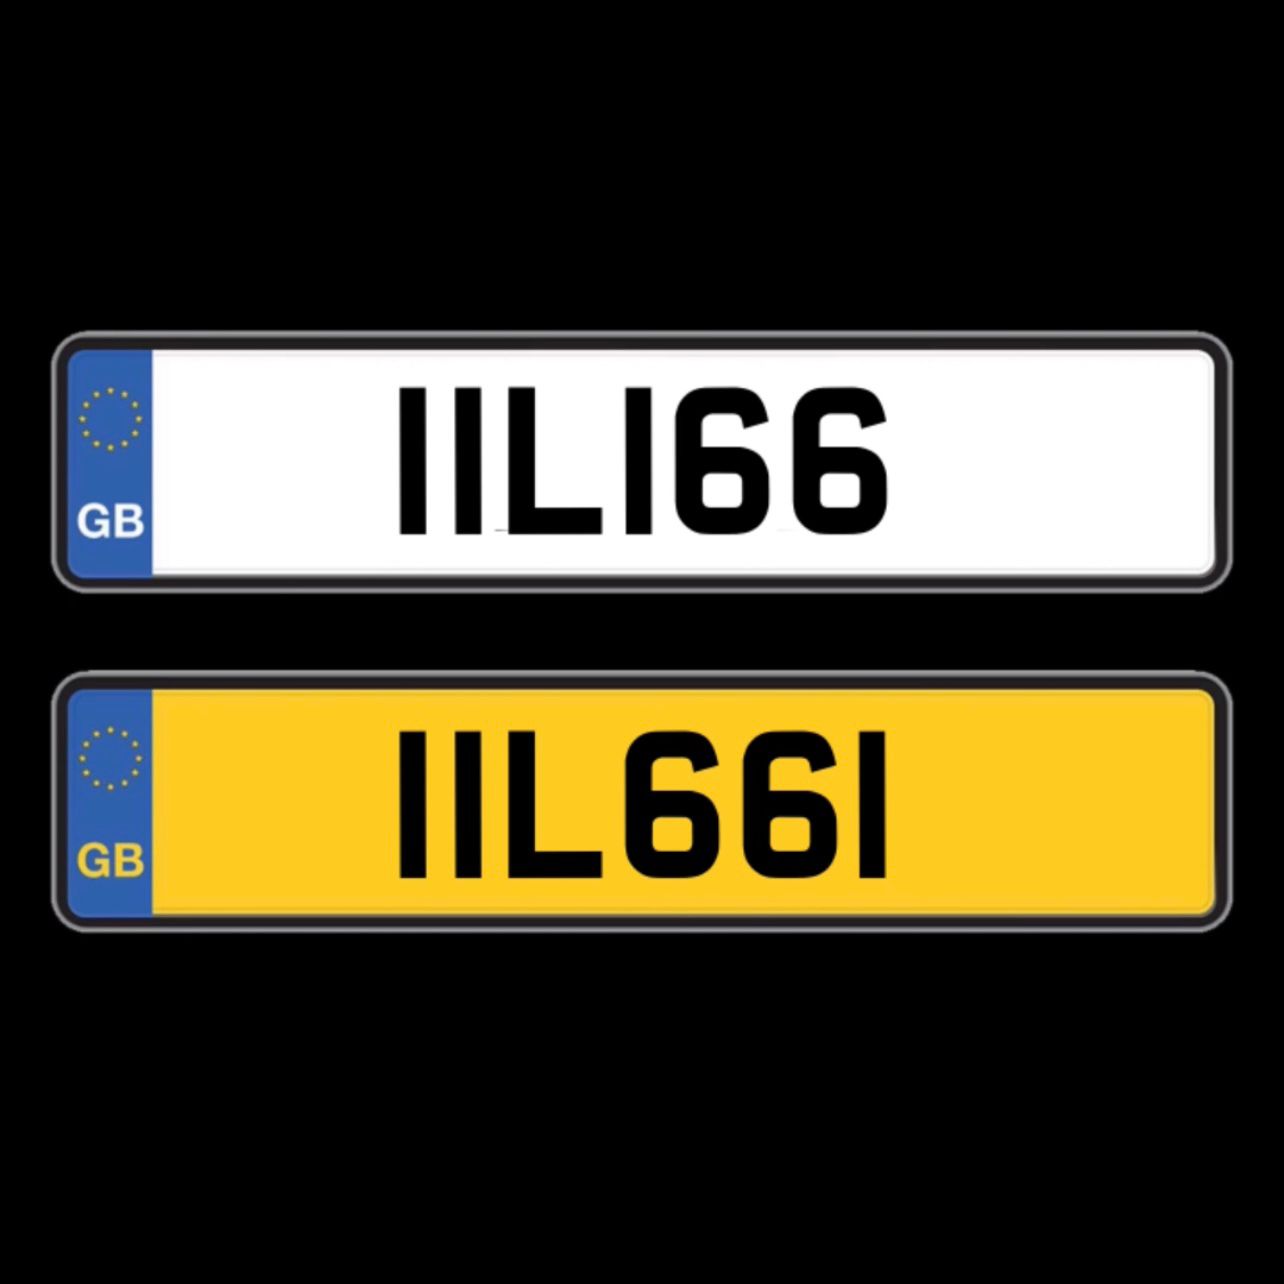 IIL166 & IIL661